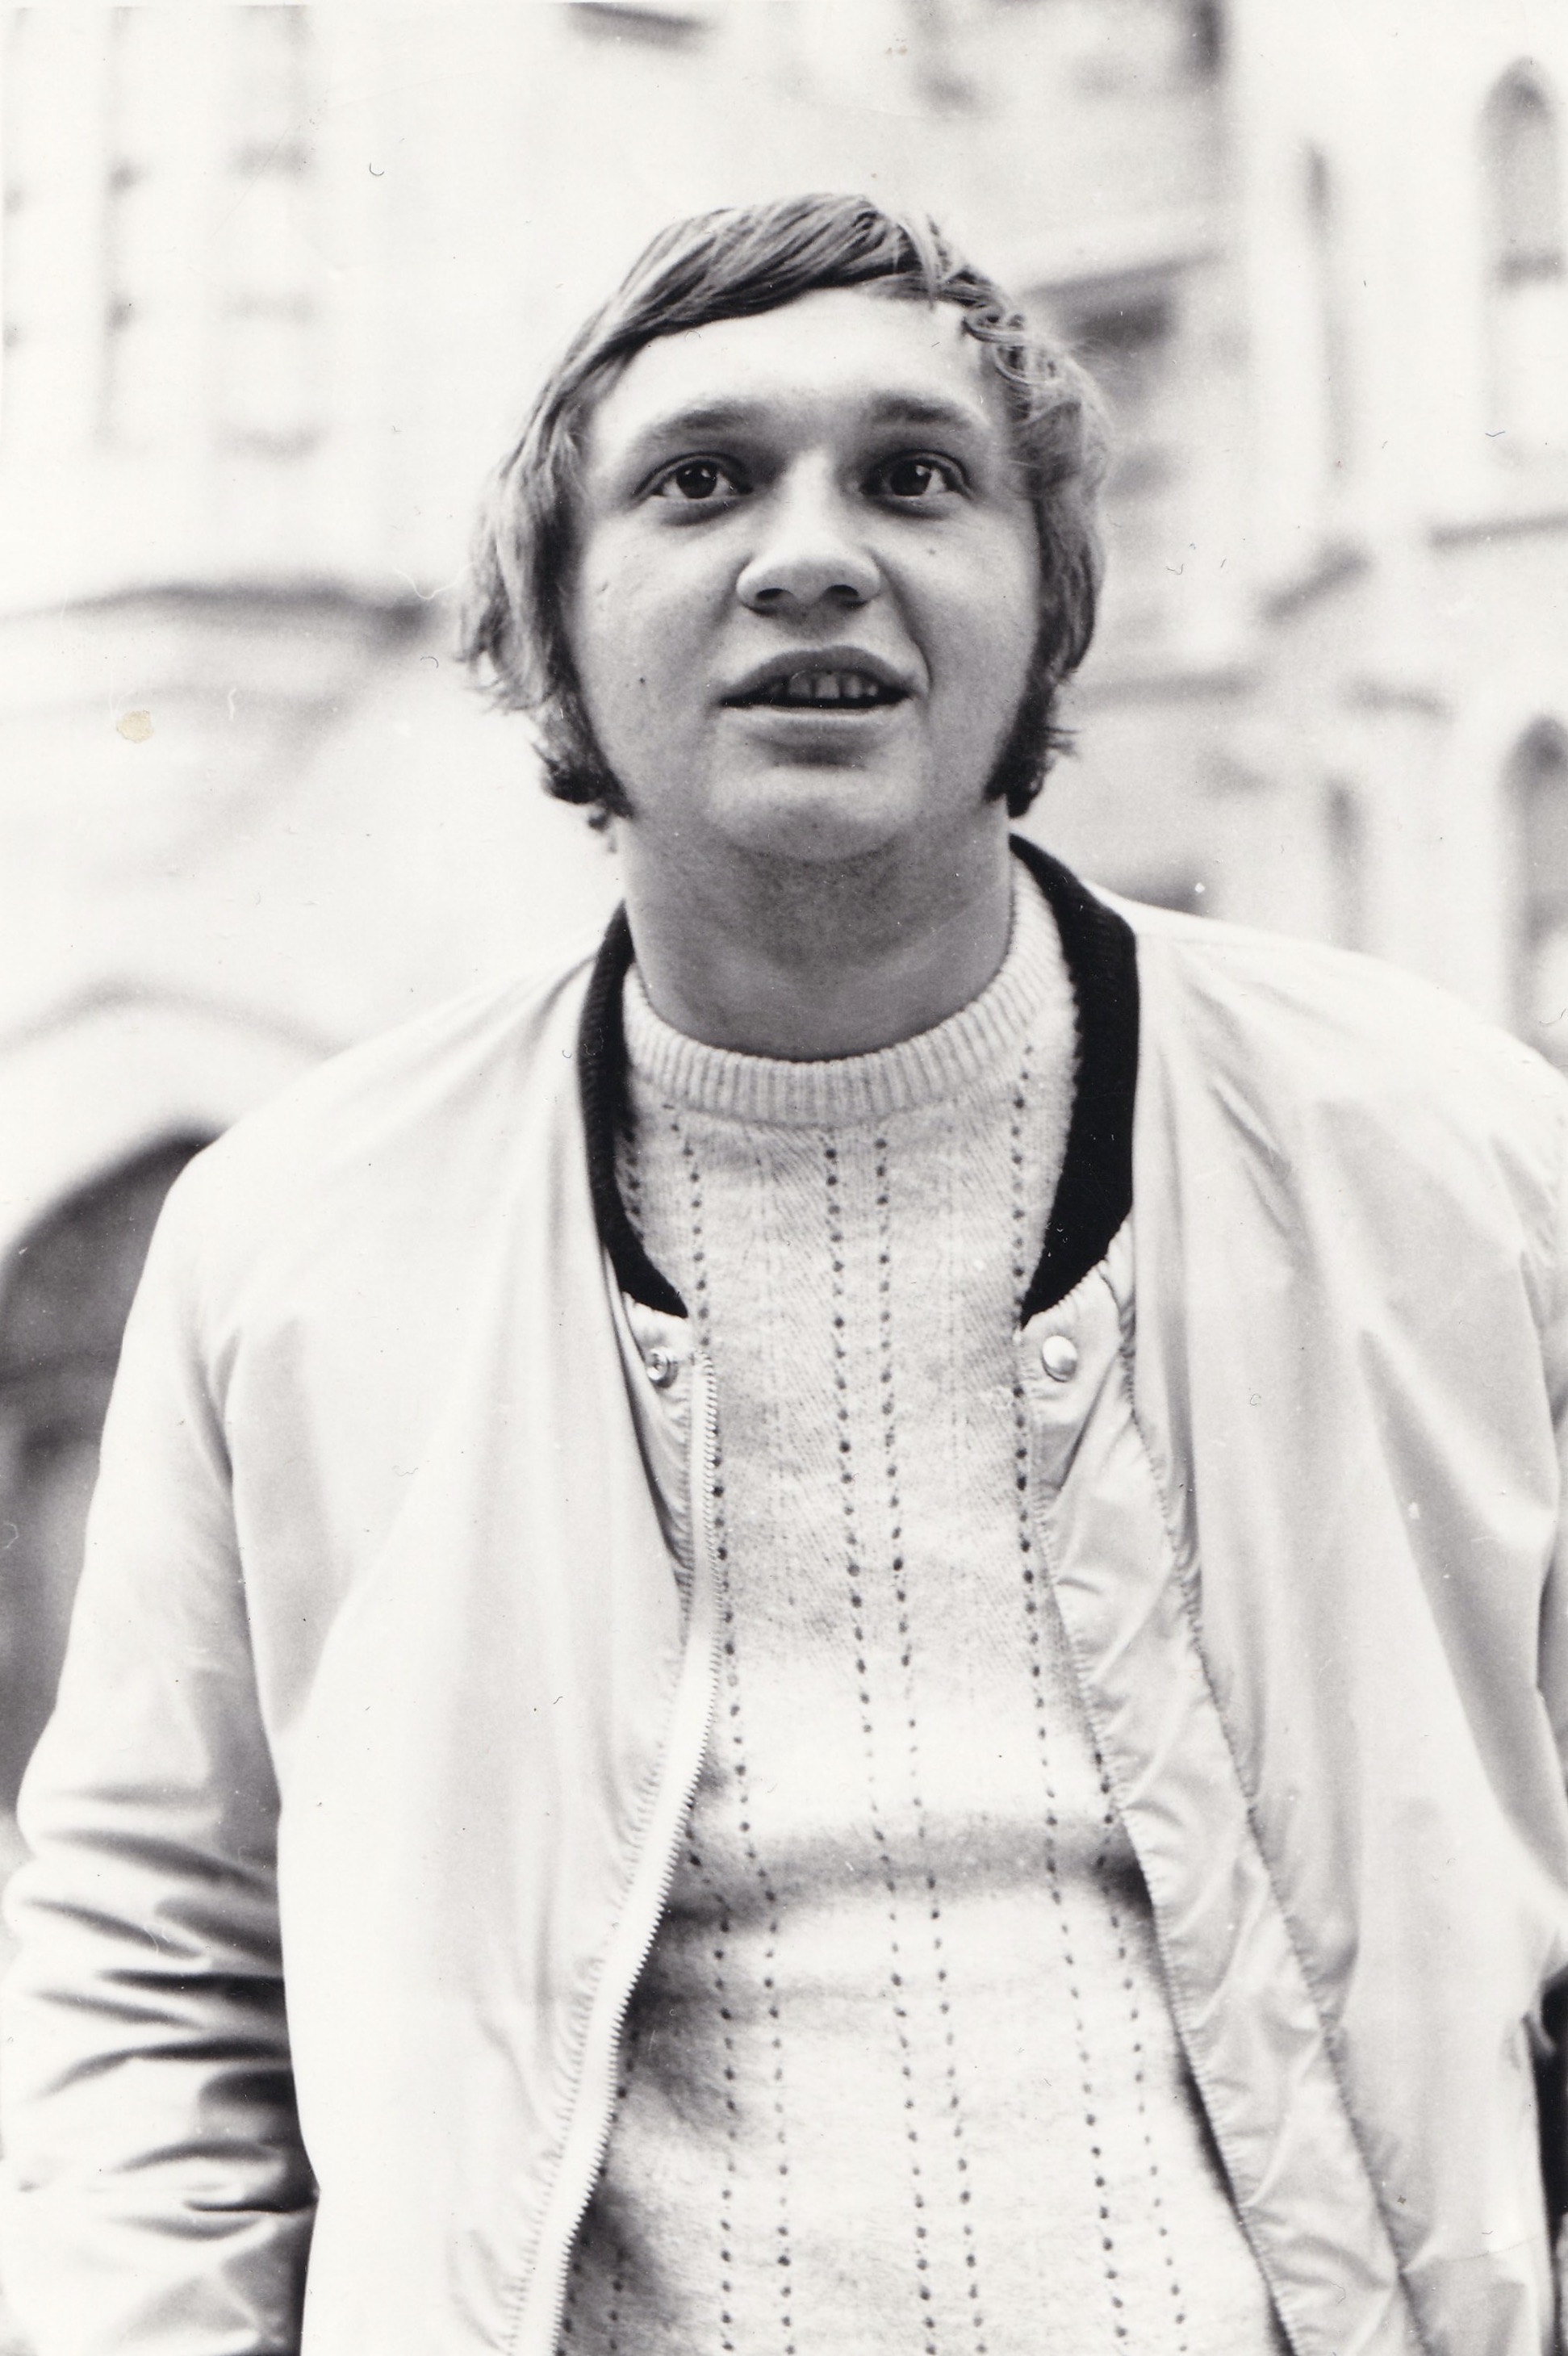 Štěpán Bittner in 1971